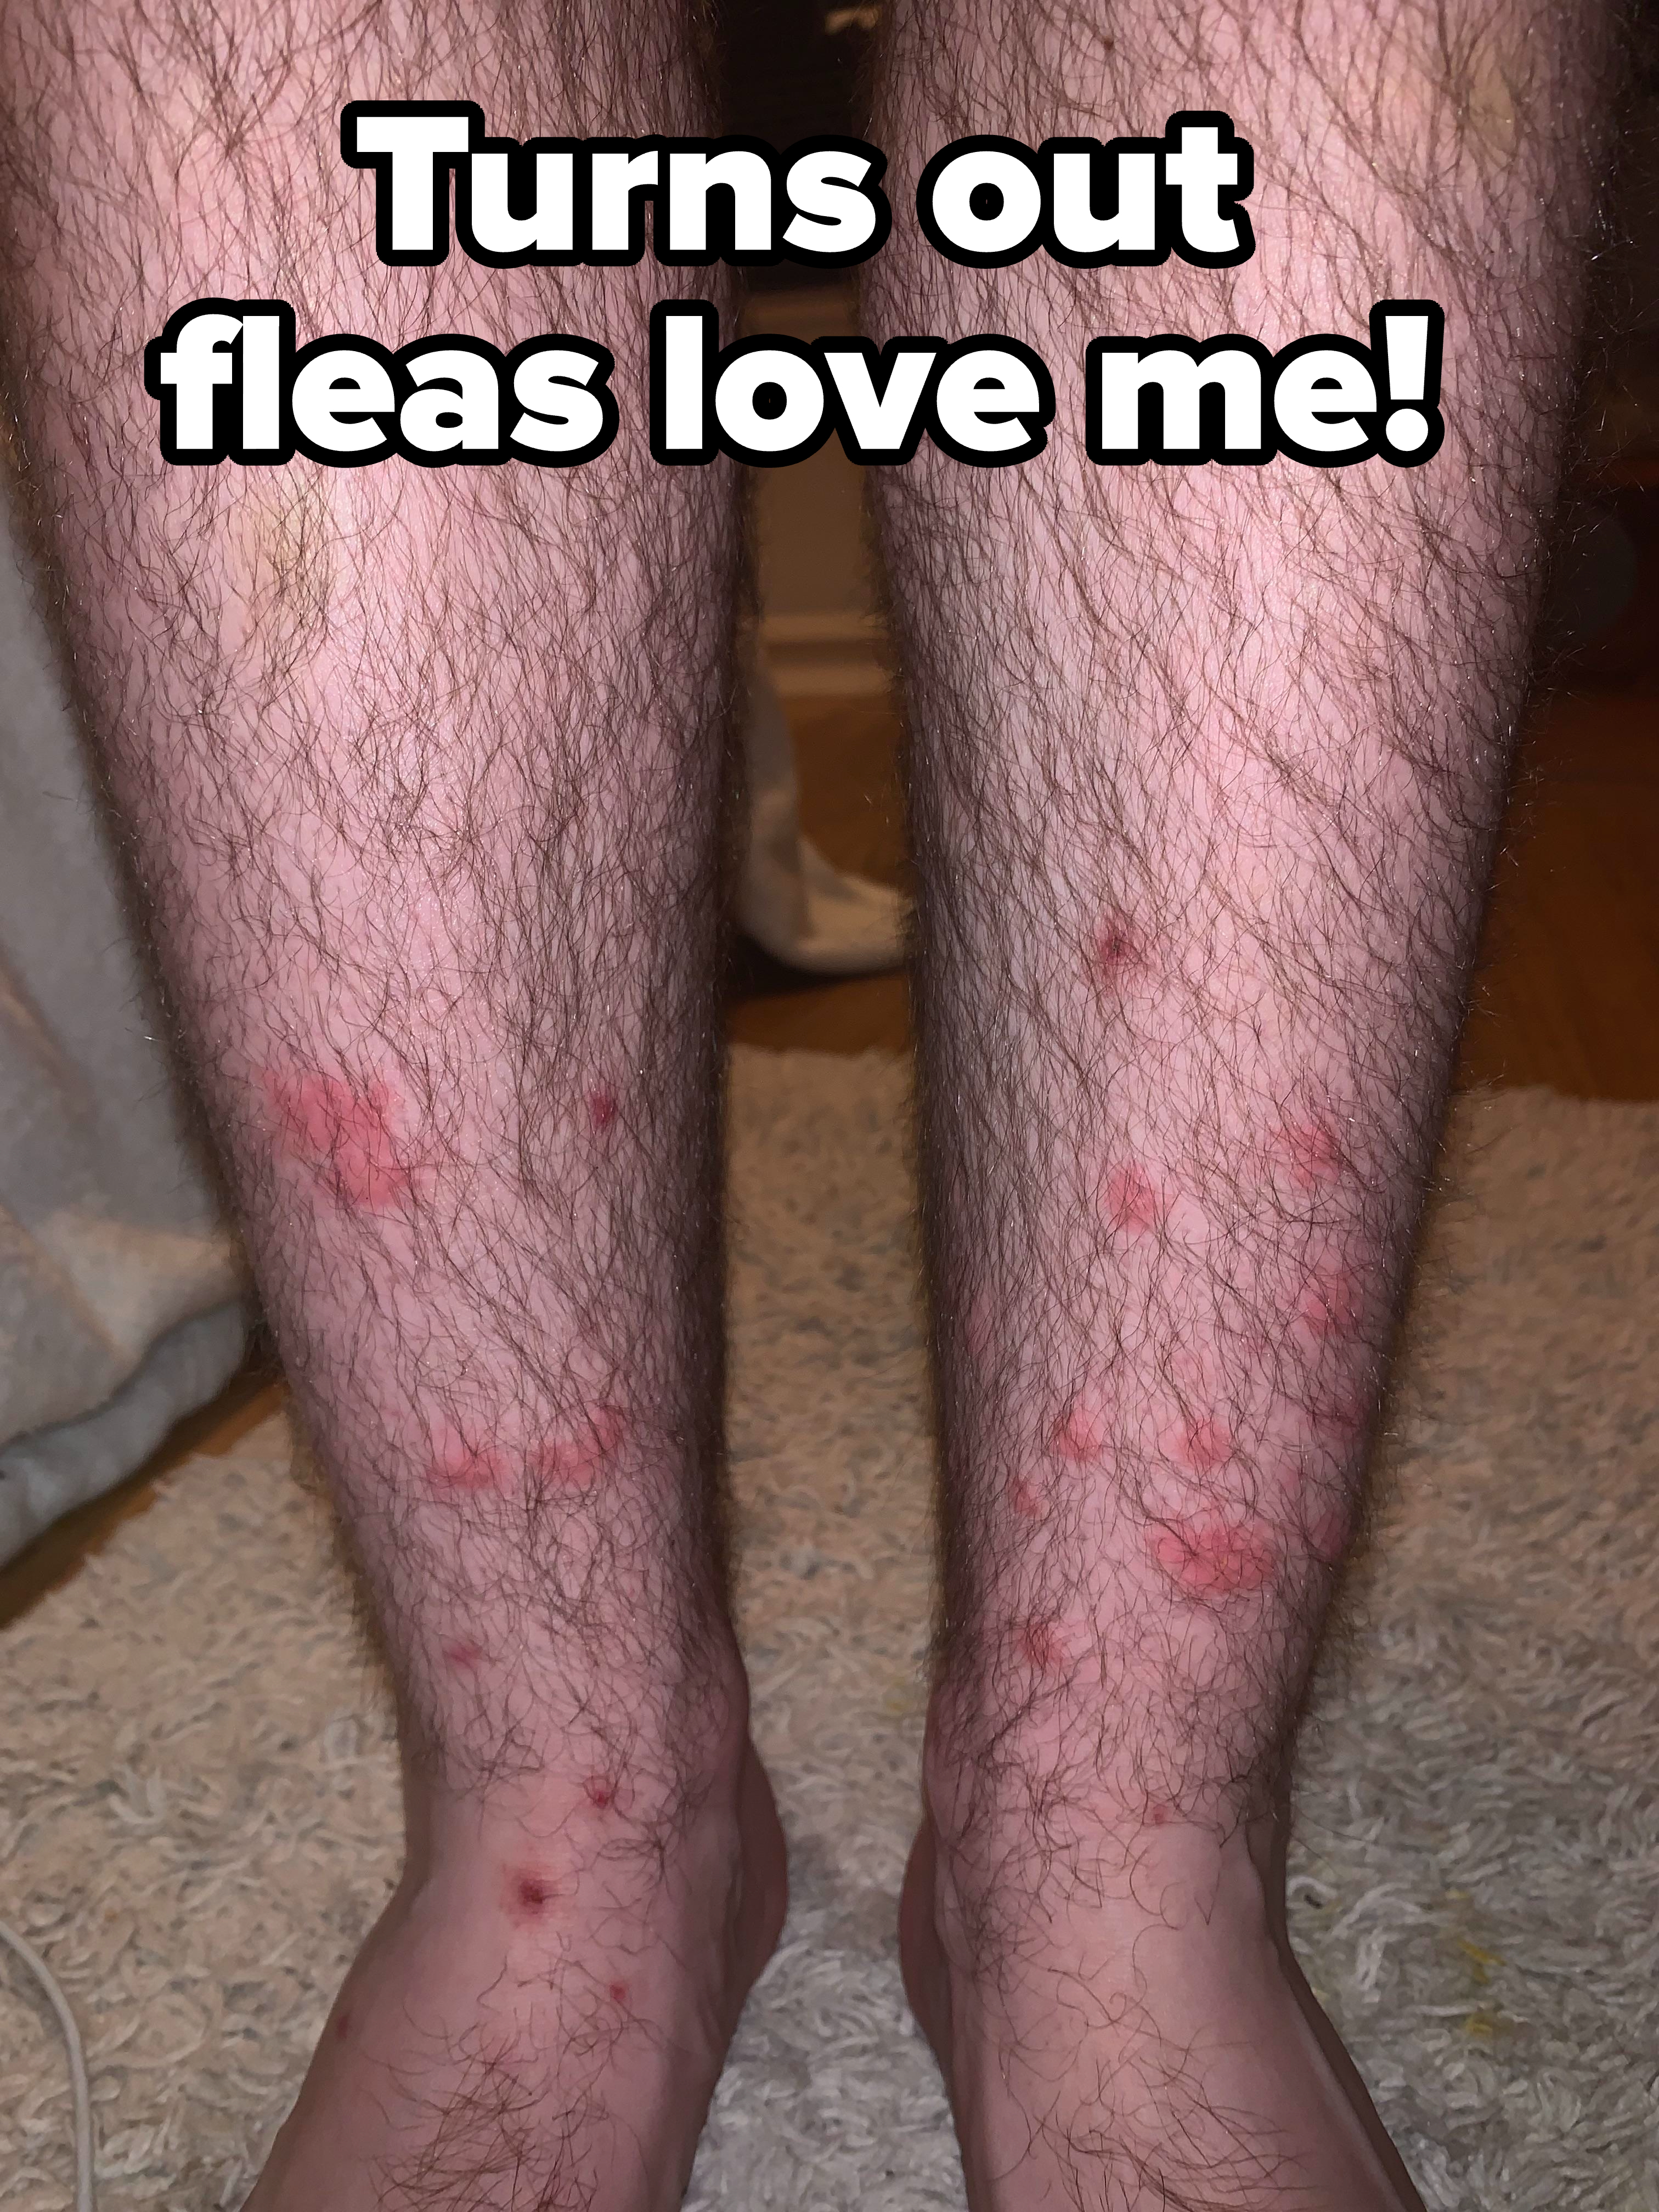 flea bites on legs